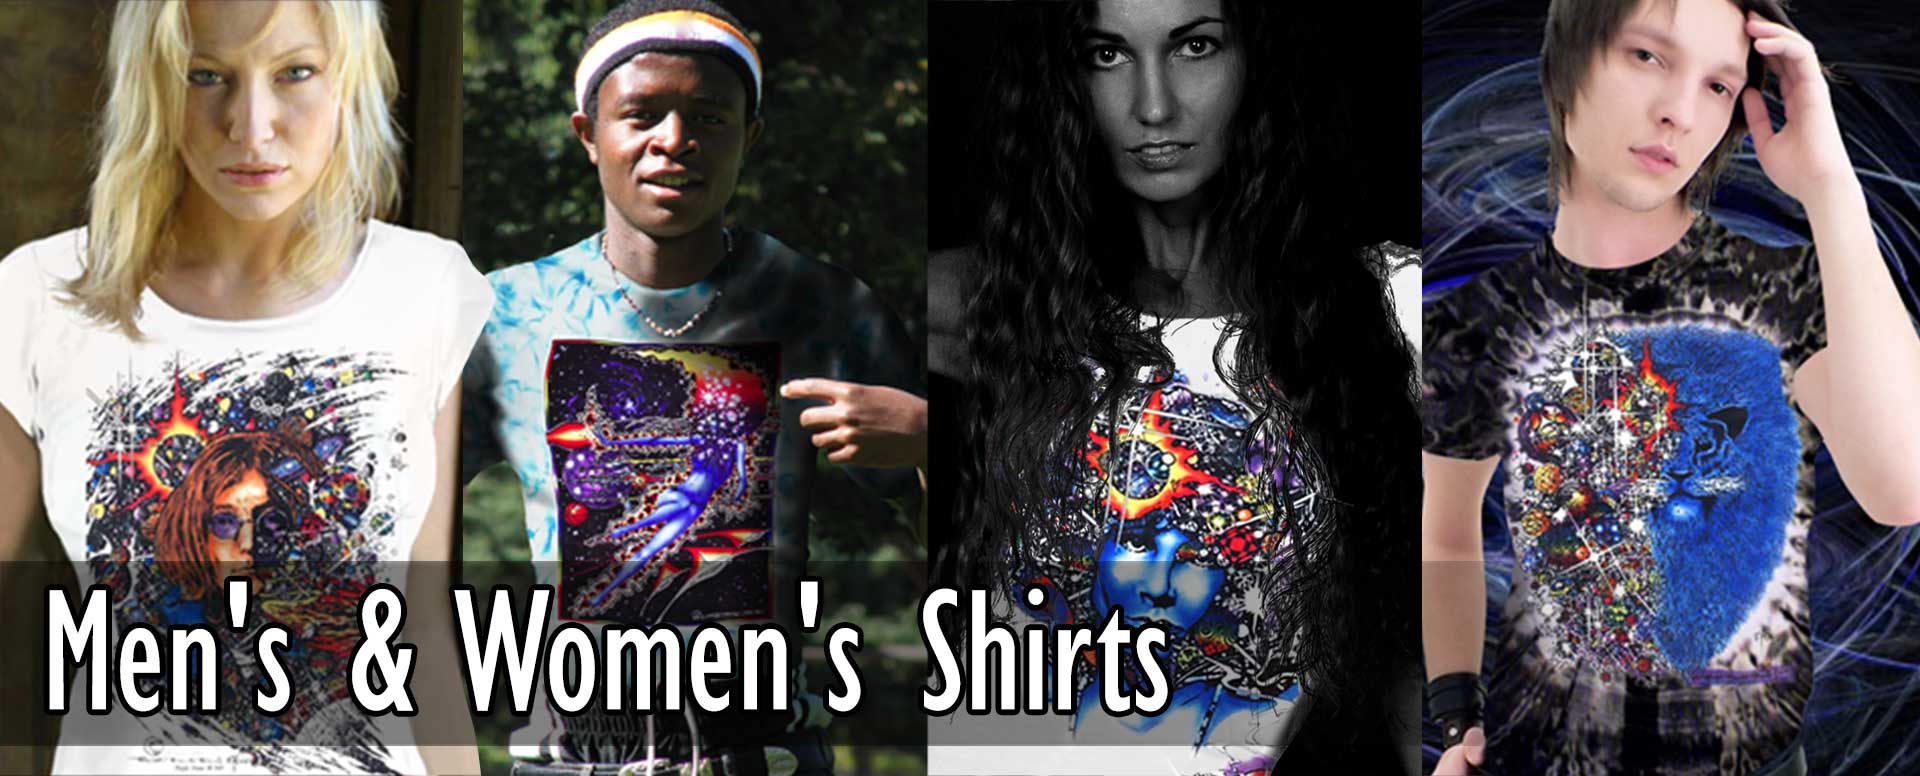 Men's & Women's T-shirts & Tank Tops